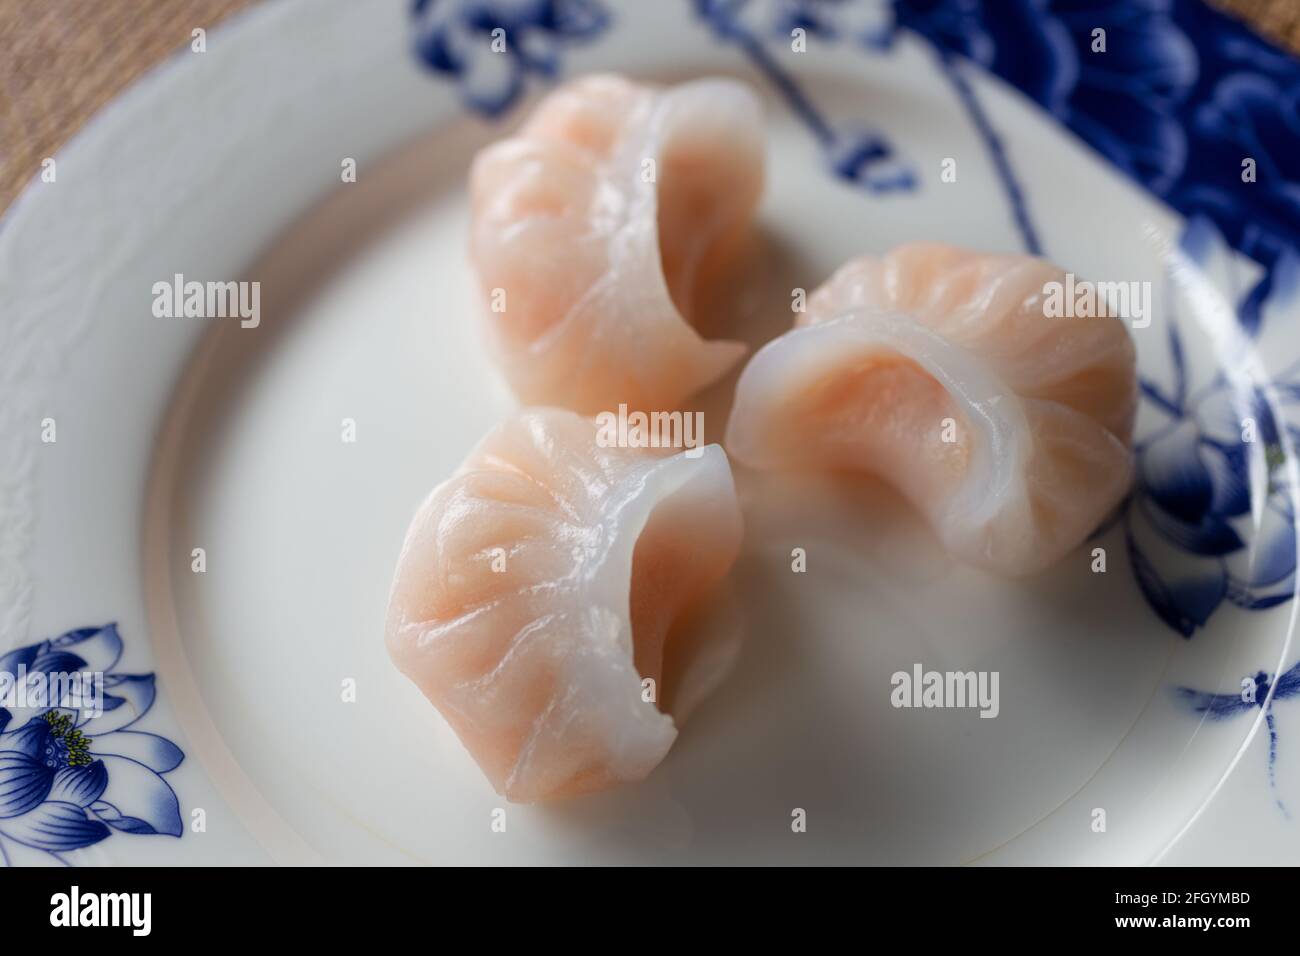 Plat traditionnel chinois authentique : boulettes de style cantonais Har gow aux crevettes, gros plan sur une assiette blanche et bleue Banque D'Images